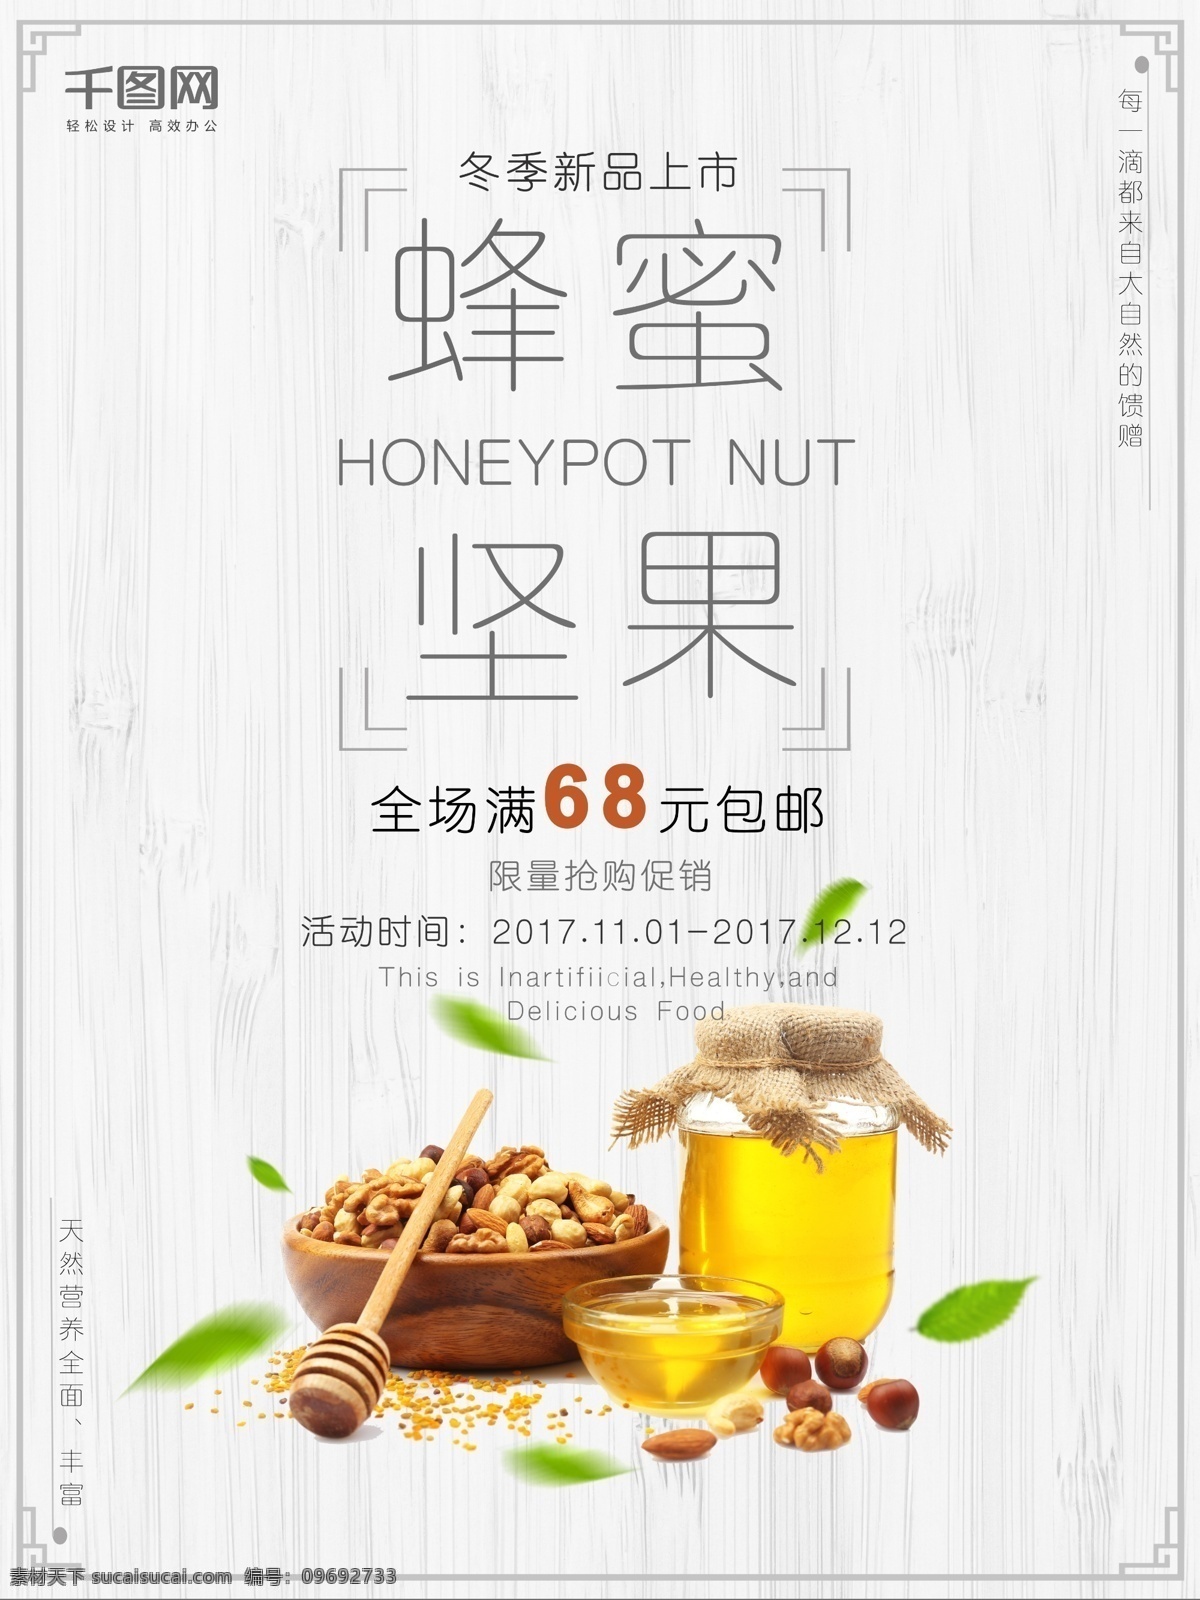 蜂蜜 坚果 冬季 新品上市 宣传海报 活动时间 全场包邮 叶子